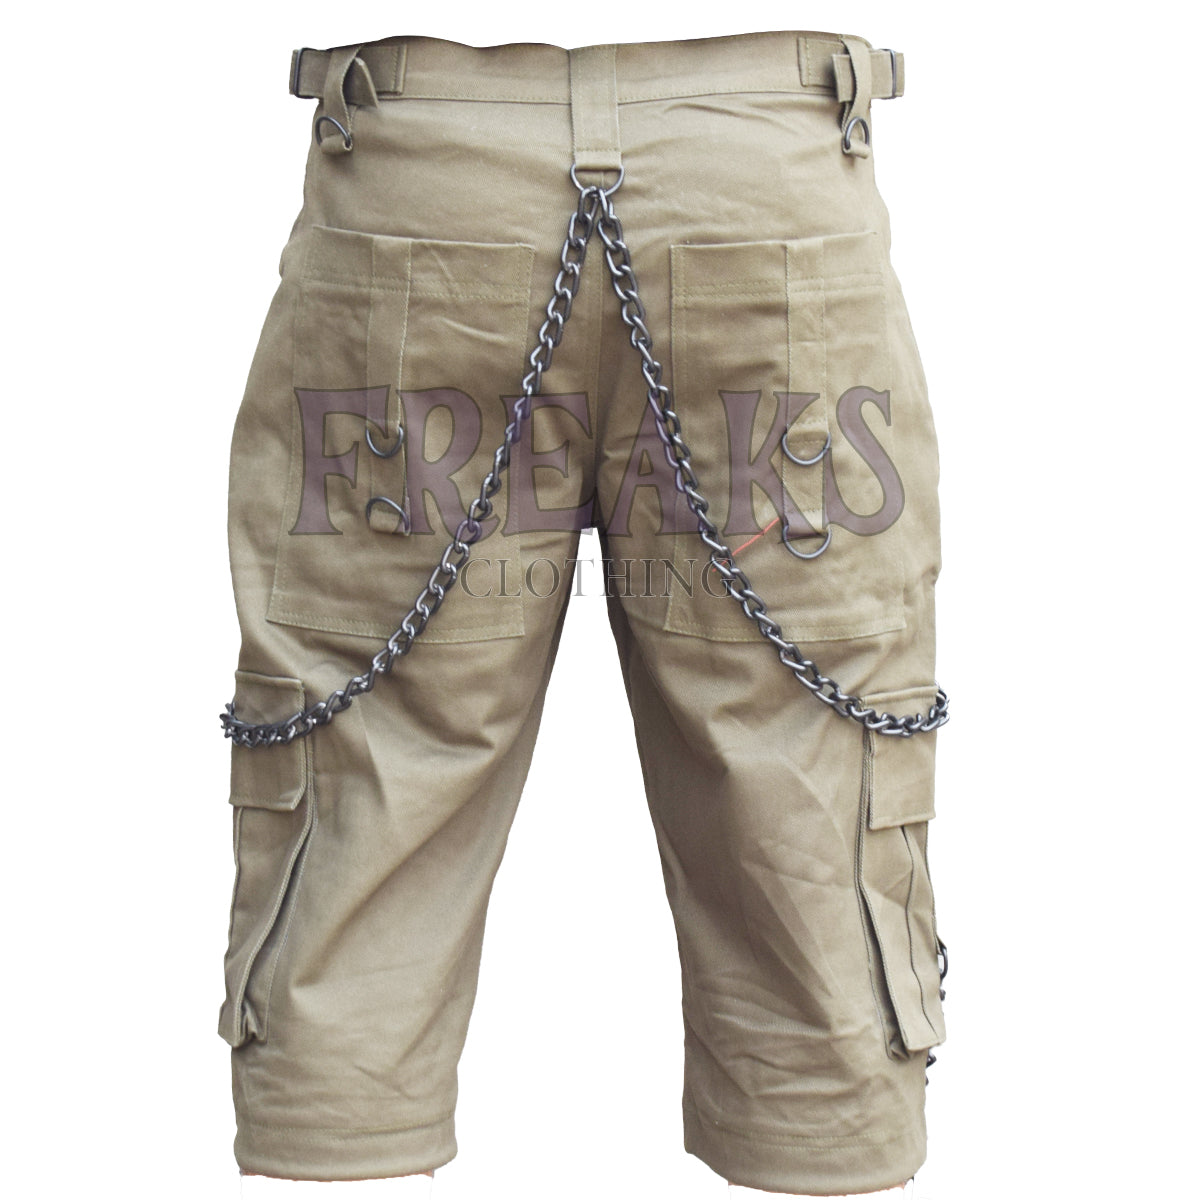 Khaki Cargo Chains Shorts Men's